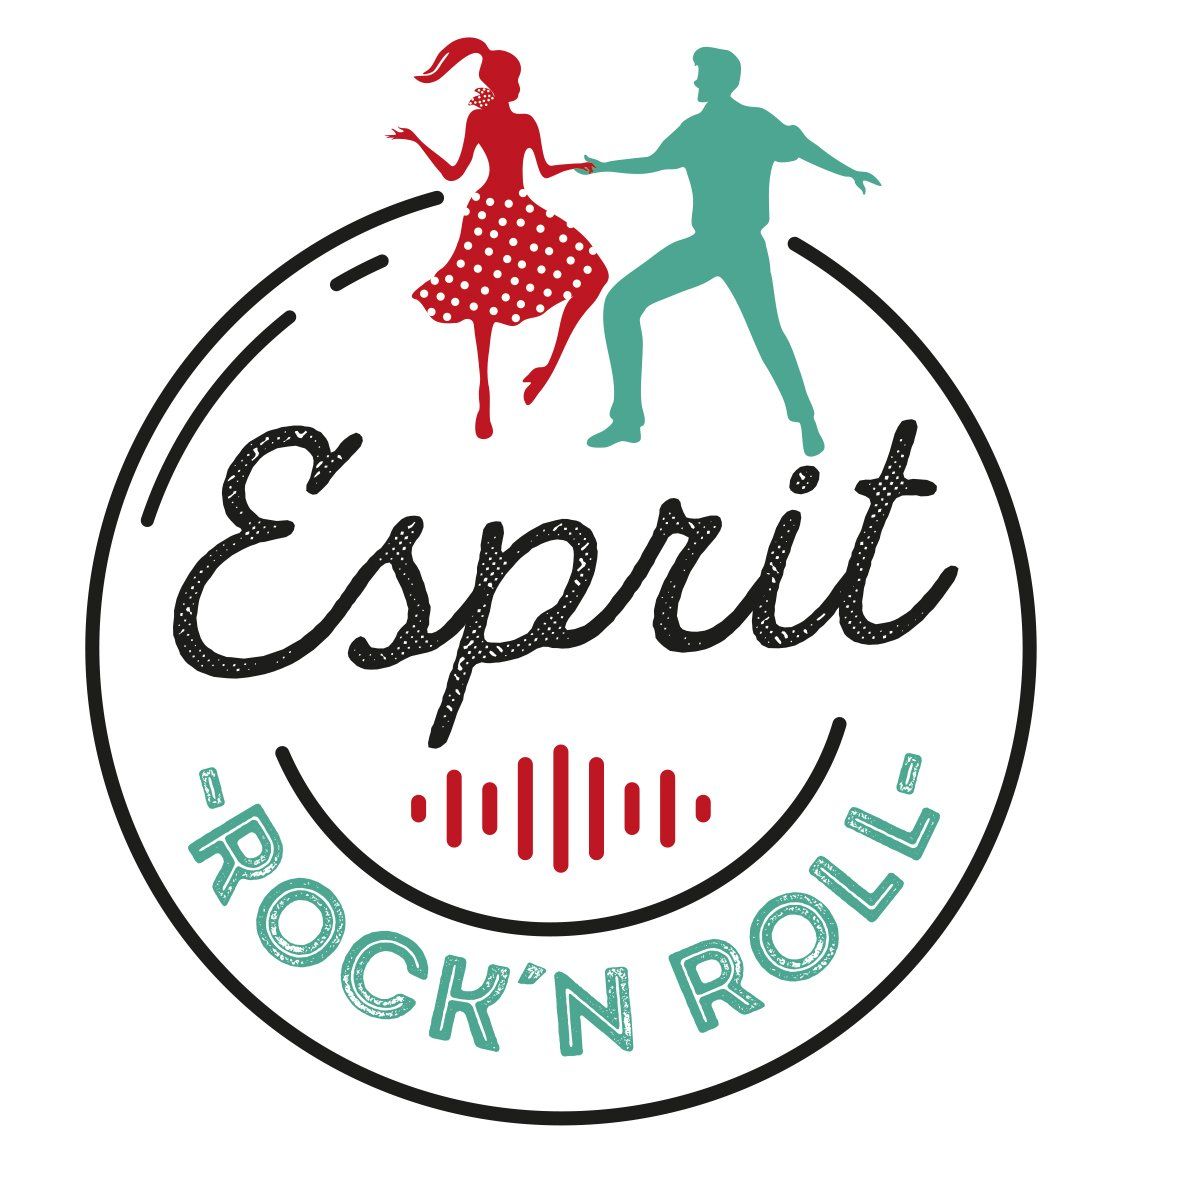 Esprit rock'n roll logo - spécialiste du rock acrobatique et des années 50/60 - spectacle de rock, concert, soirée